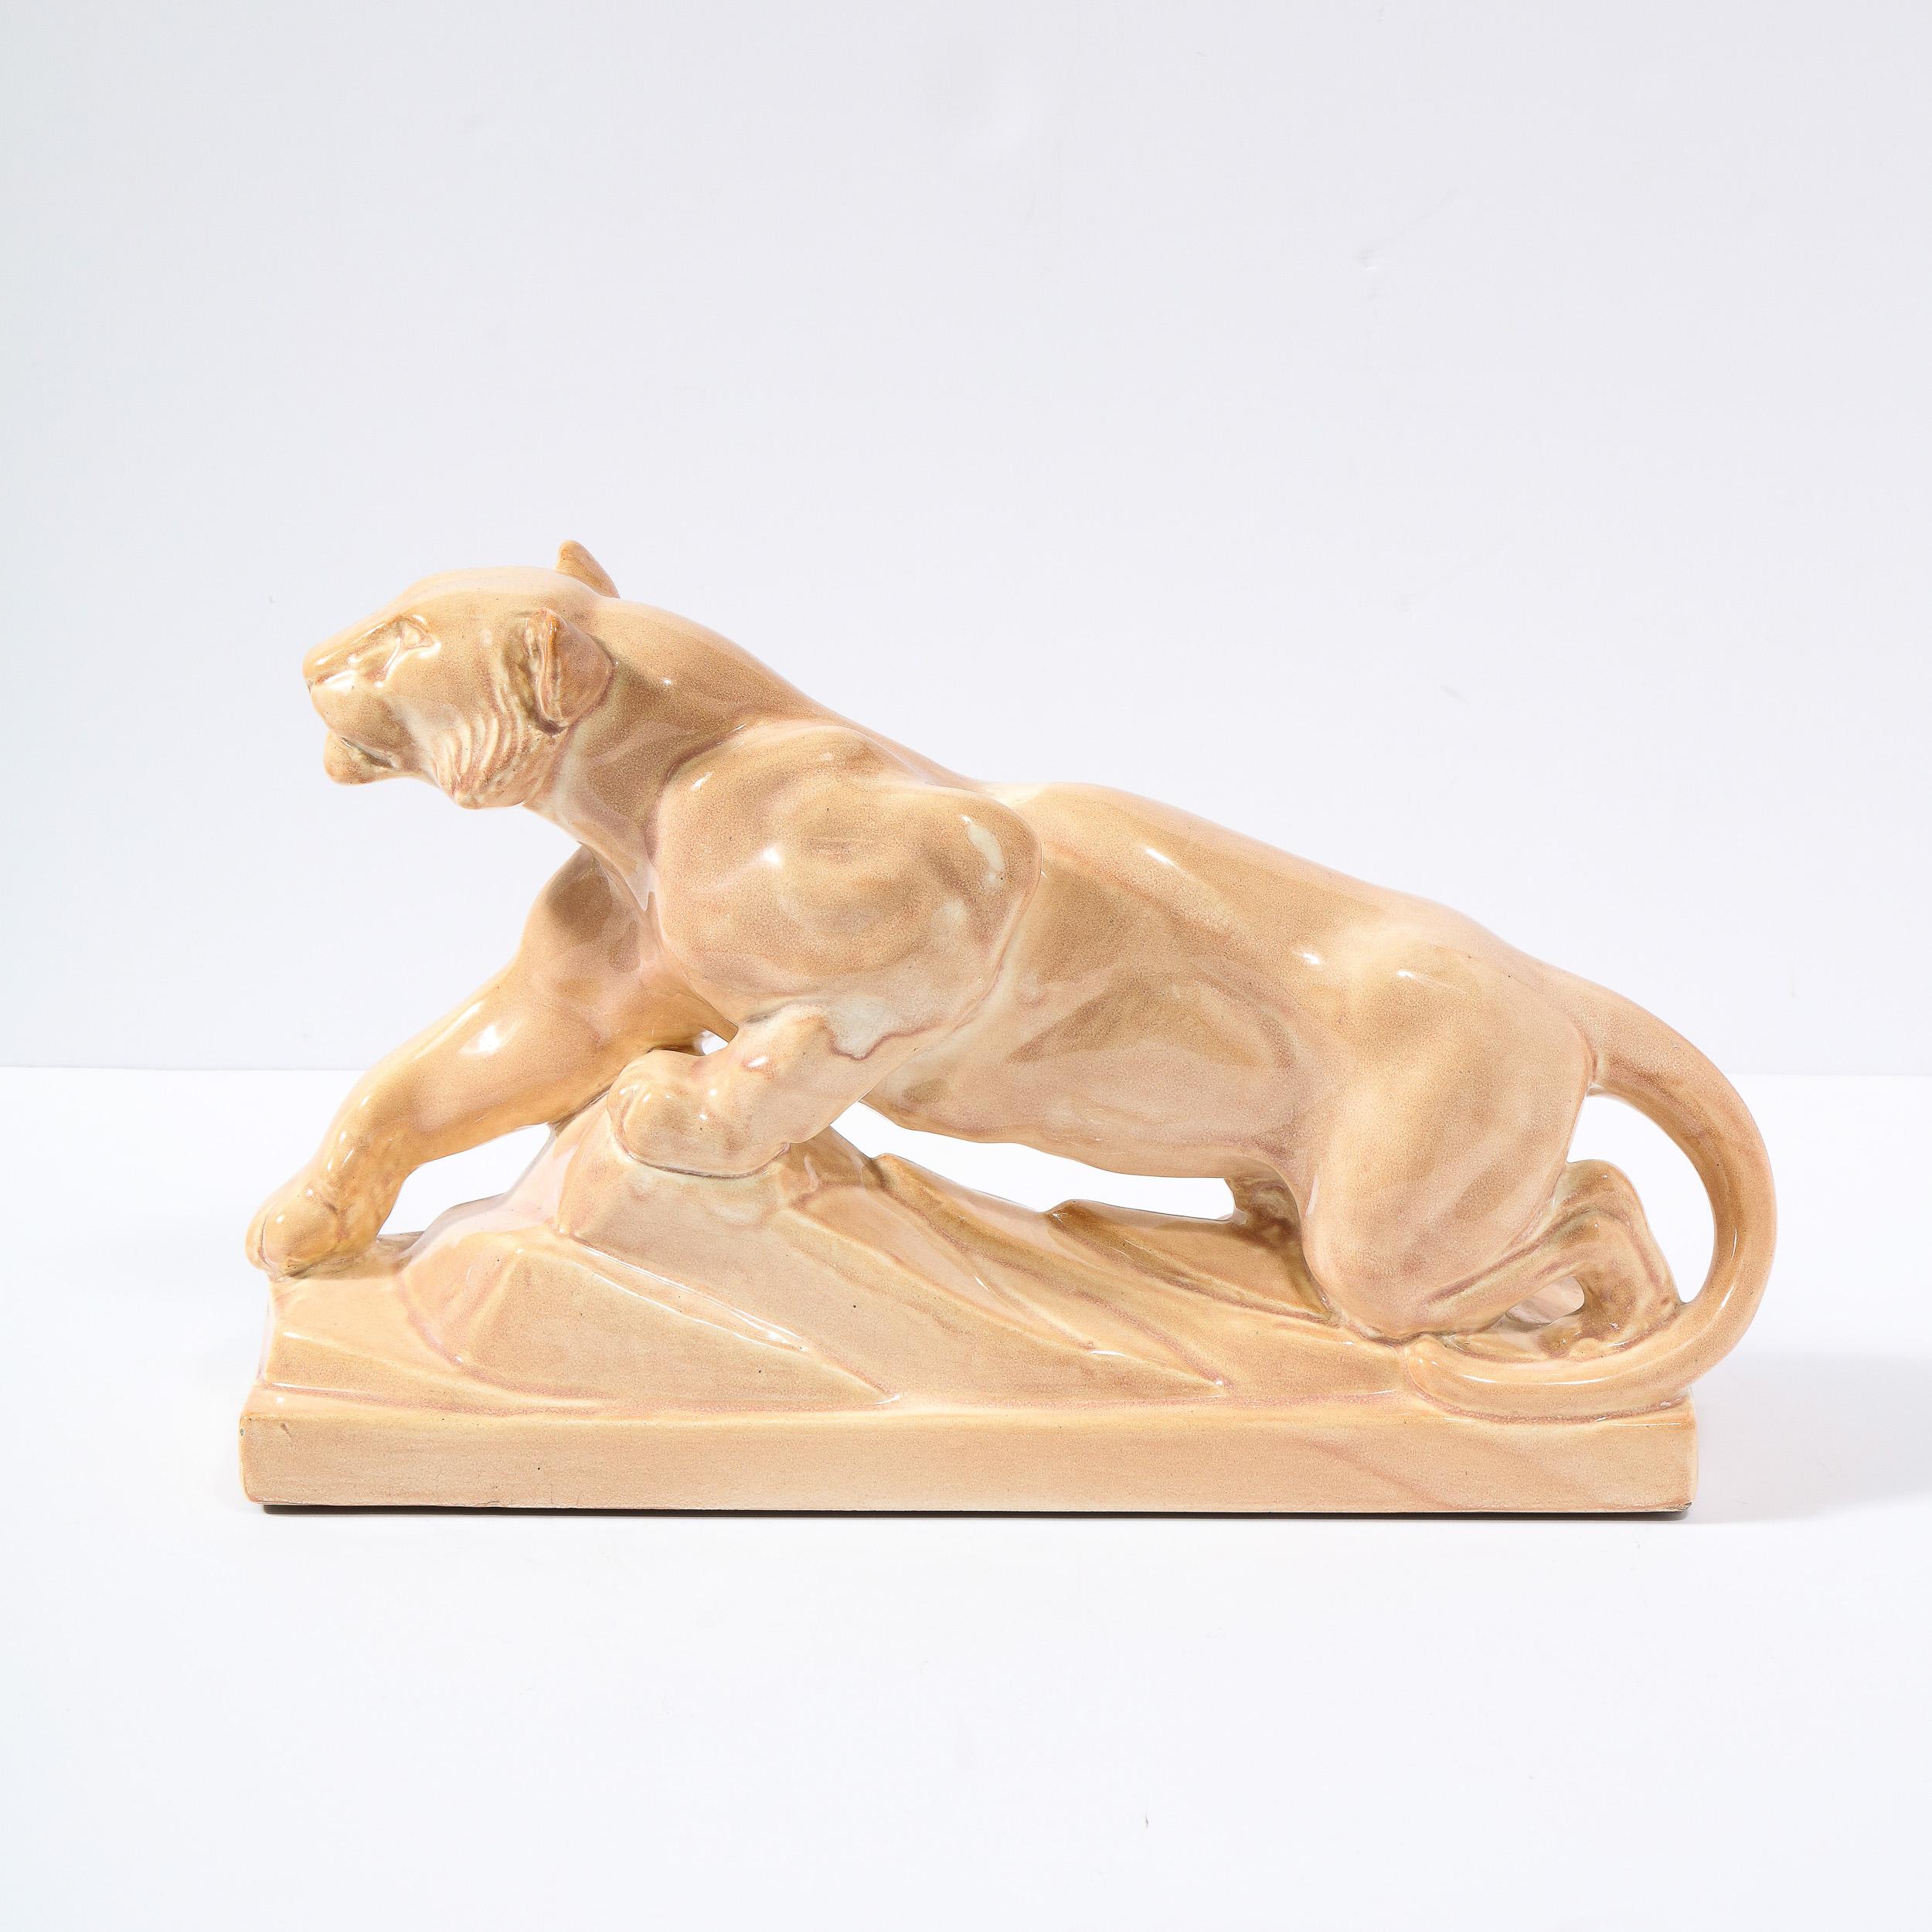 Cette étonnante sculpture d'un tigre cabré Art Déco est réalisée dans une céramique à glaçure terre cuite pâle. Elle représente un tigre stylisé sur une base géométrique à gradins faisant écho au design d'une falaise. La fissure de la glaçure lui